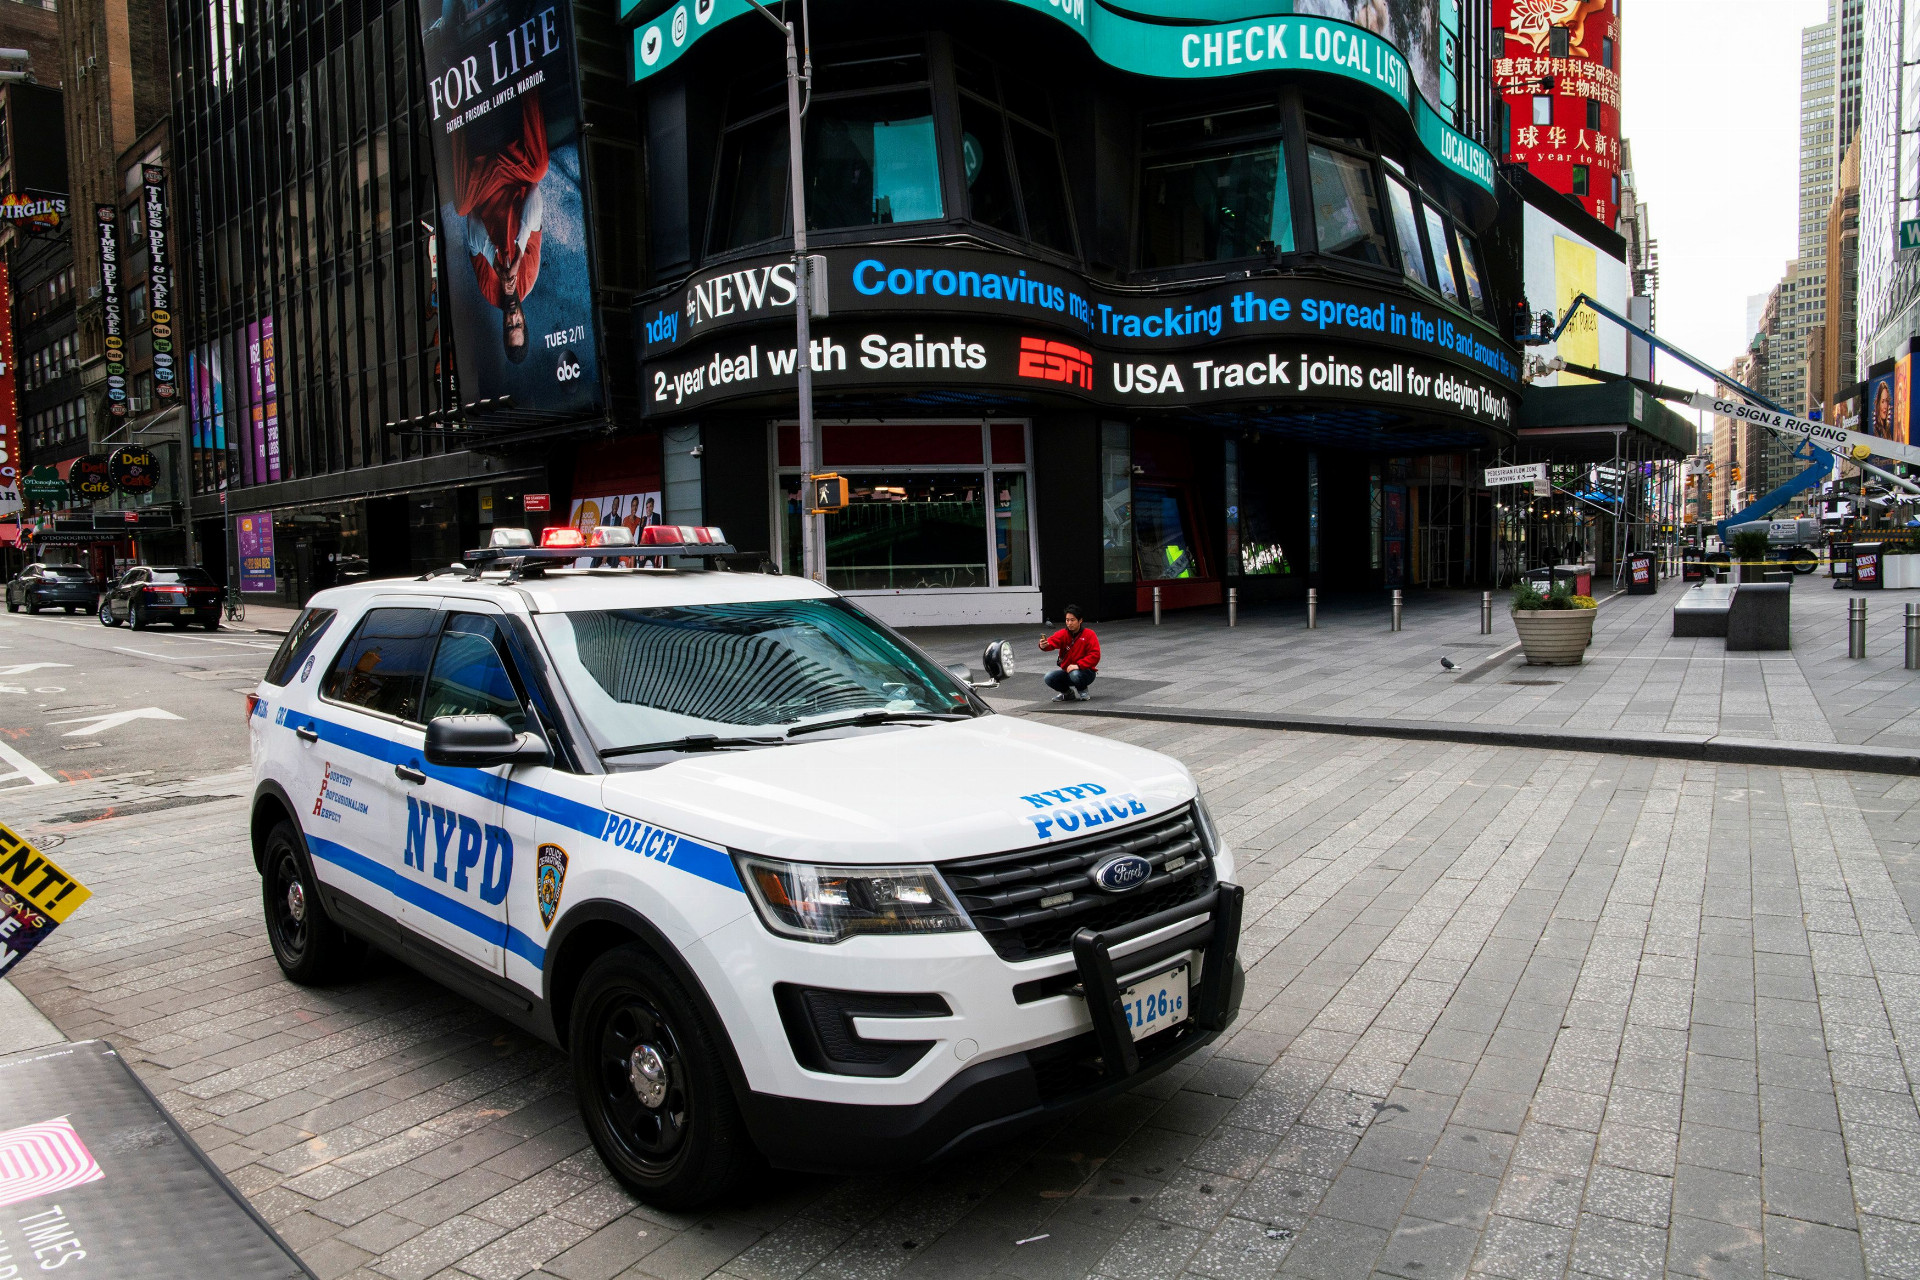 NYPD - newyorská polícia